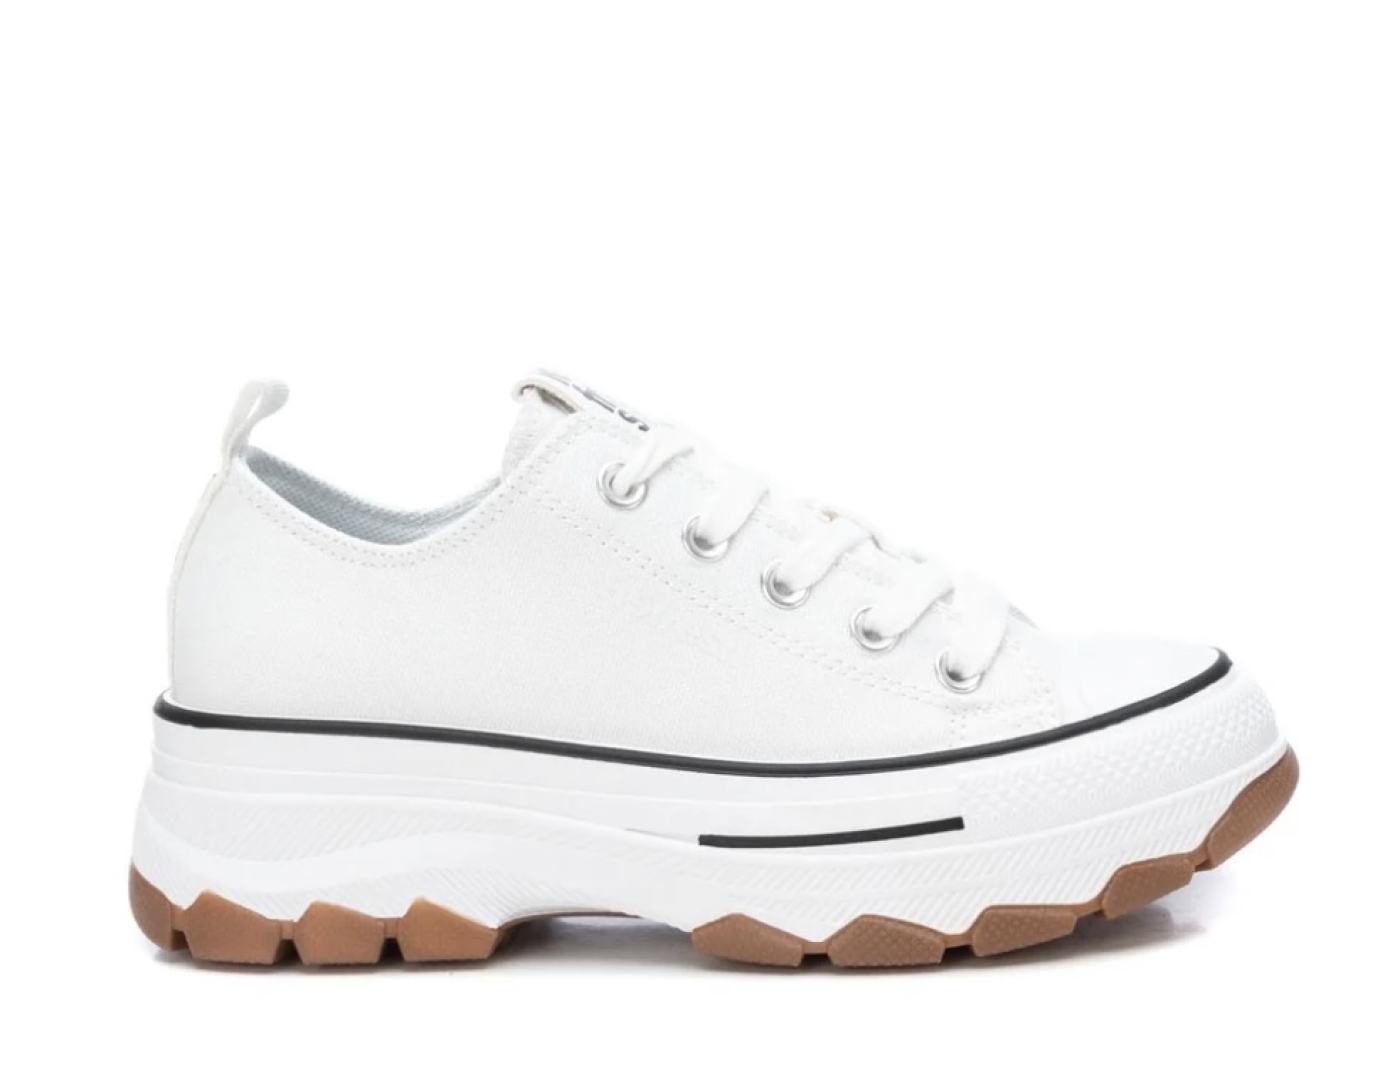 Zapato REFRESHOES para mujer en lona blanca. Ref. 171920. T-423